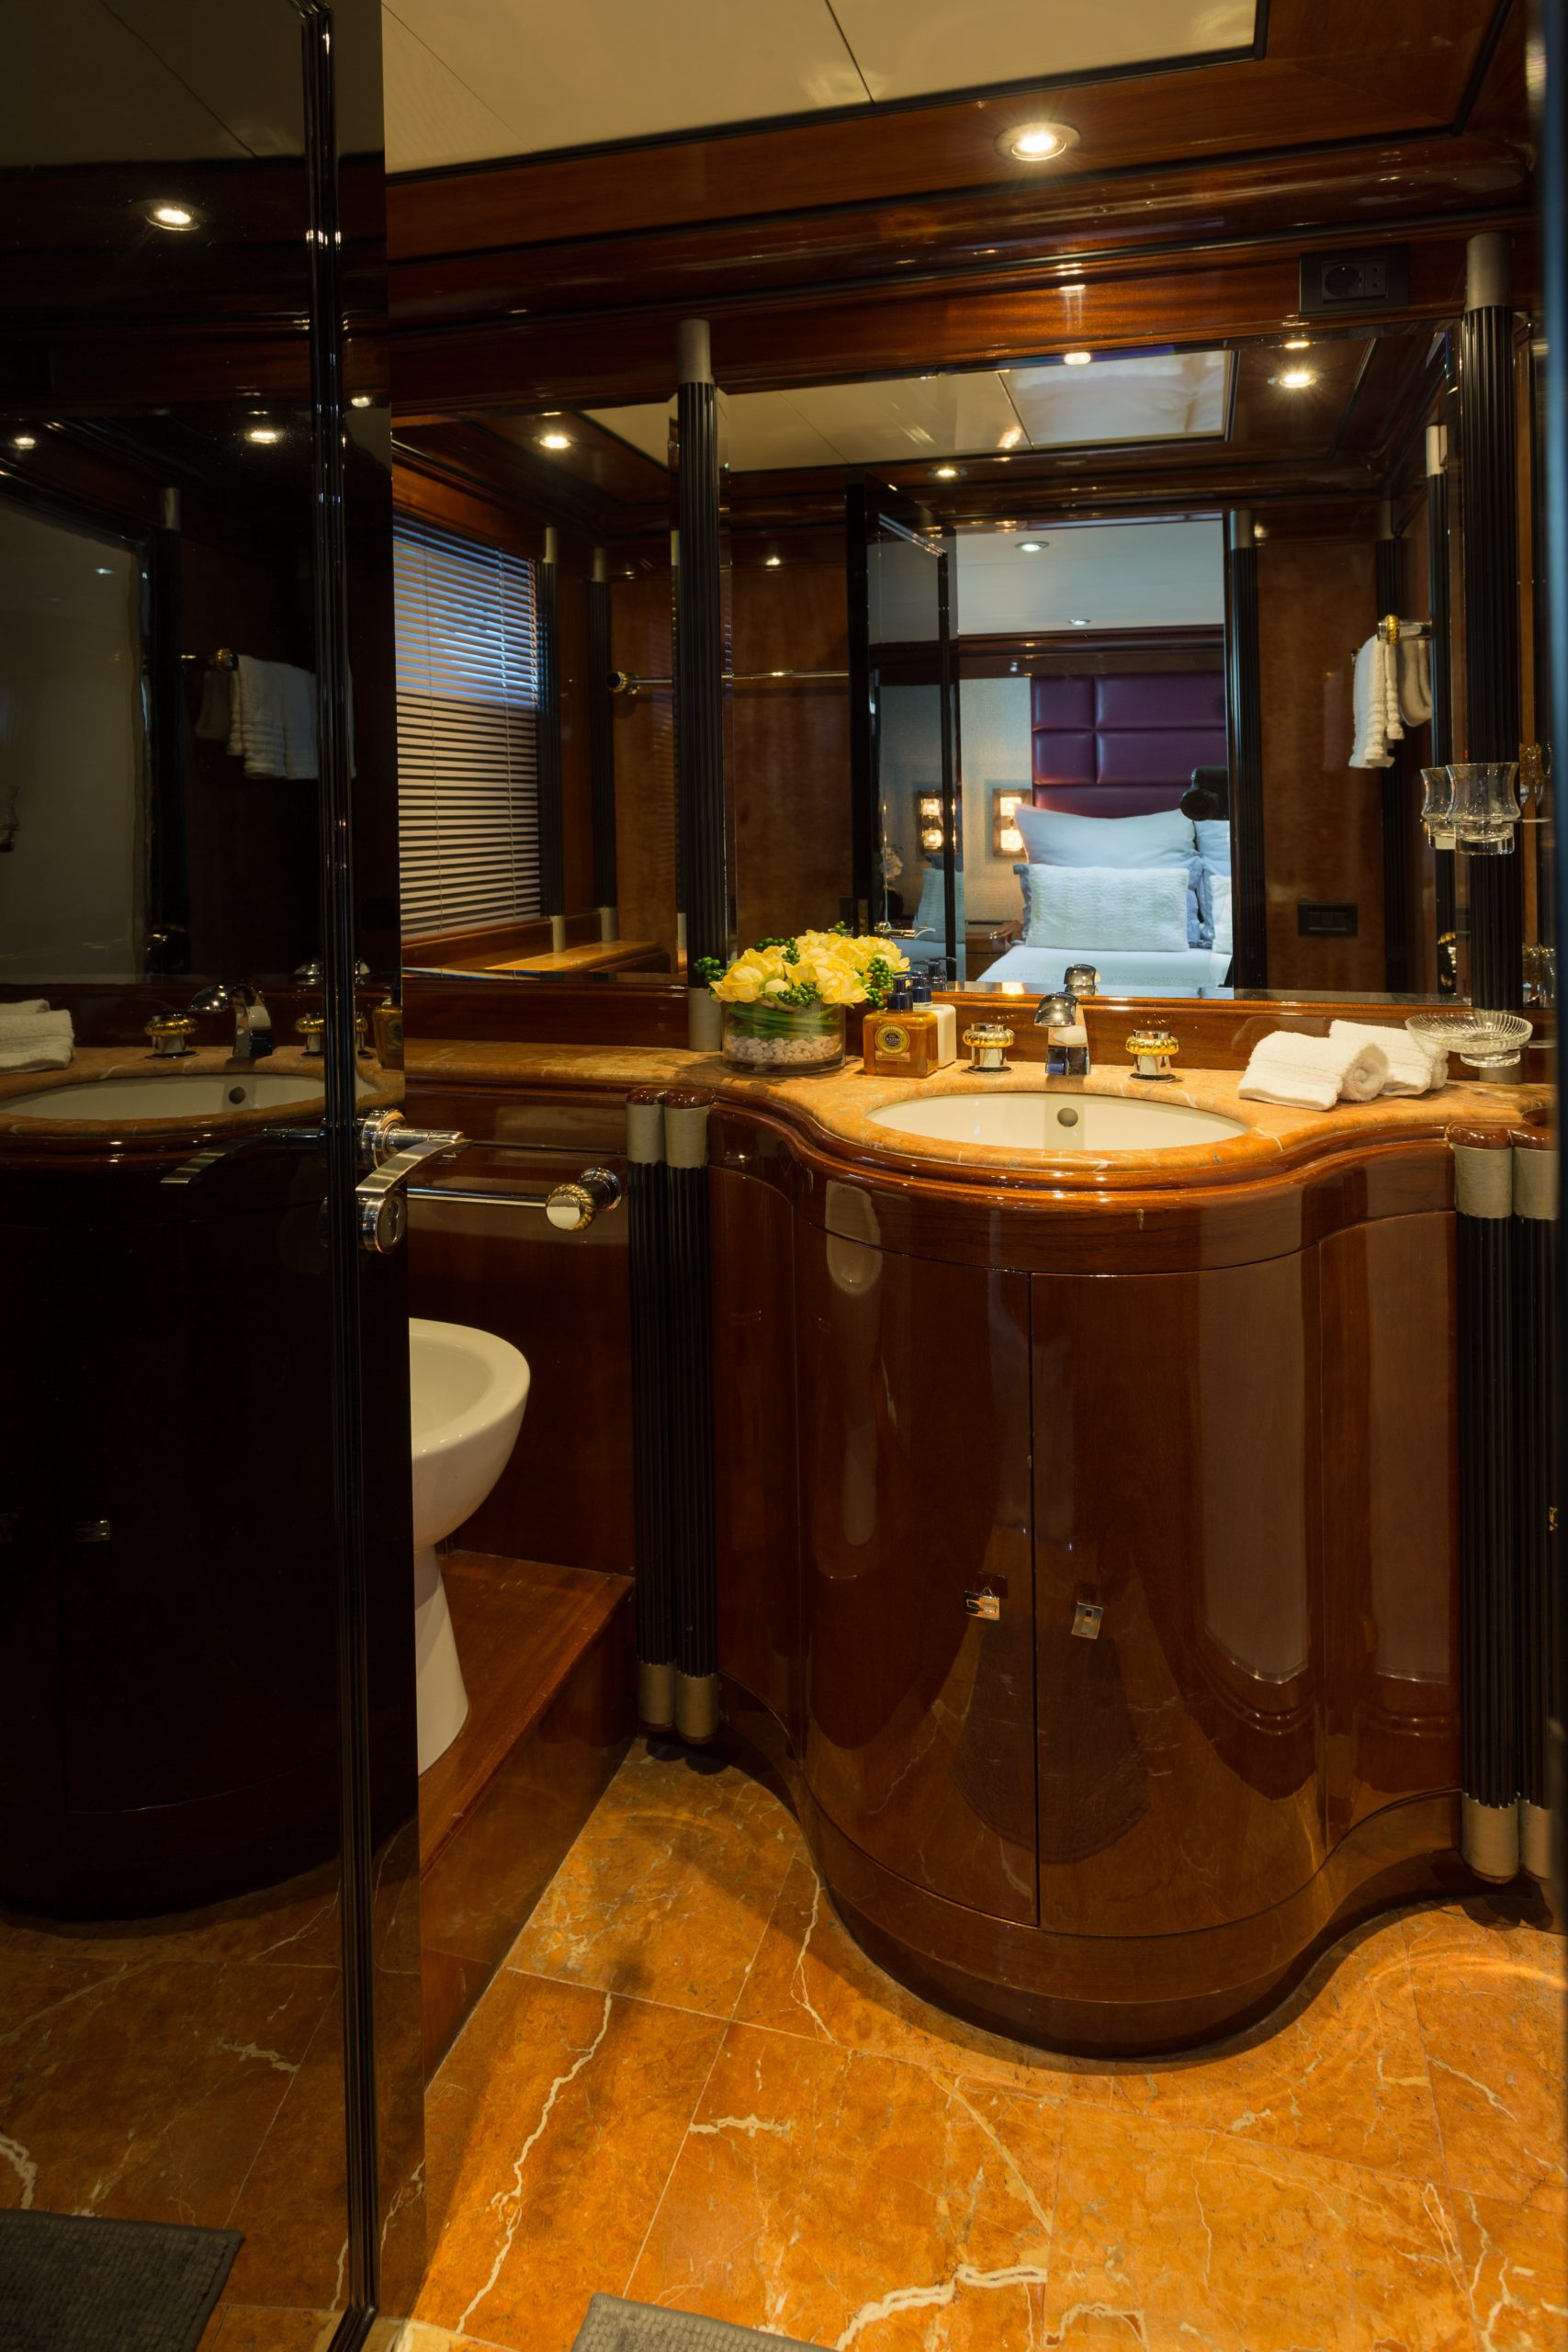 Motor Yacht Indigo Star I Double Stateroom en suite bathroom